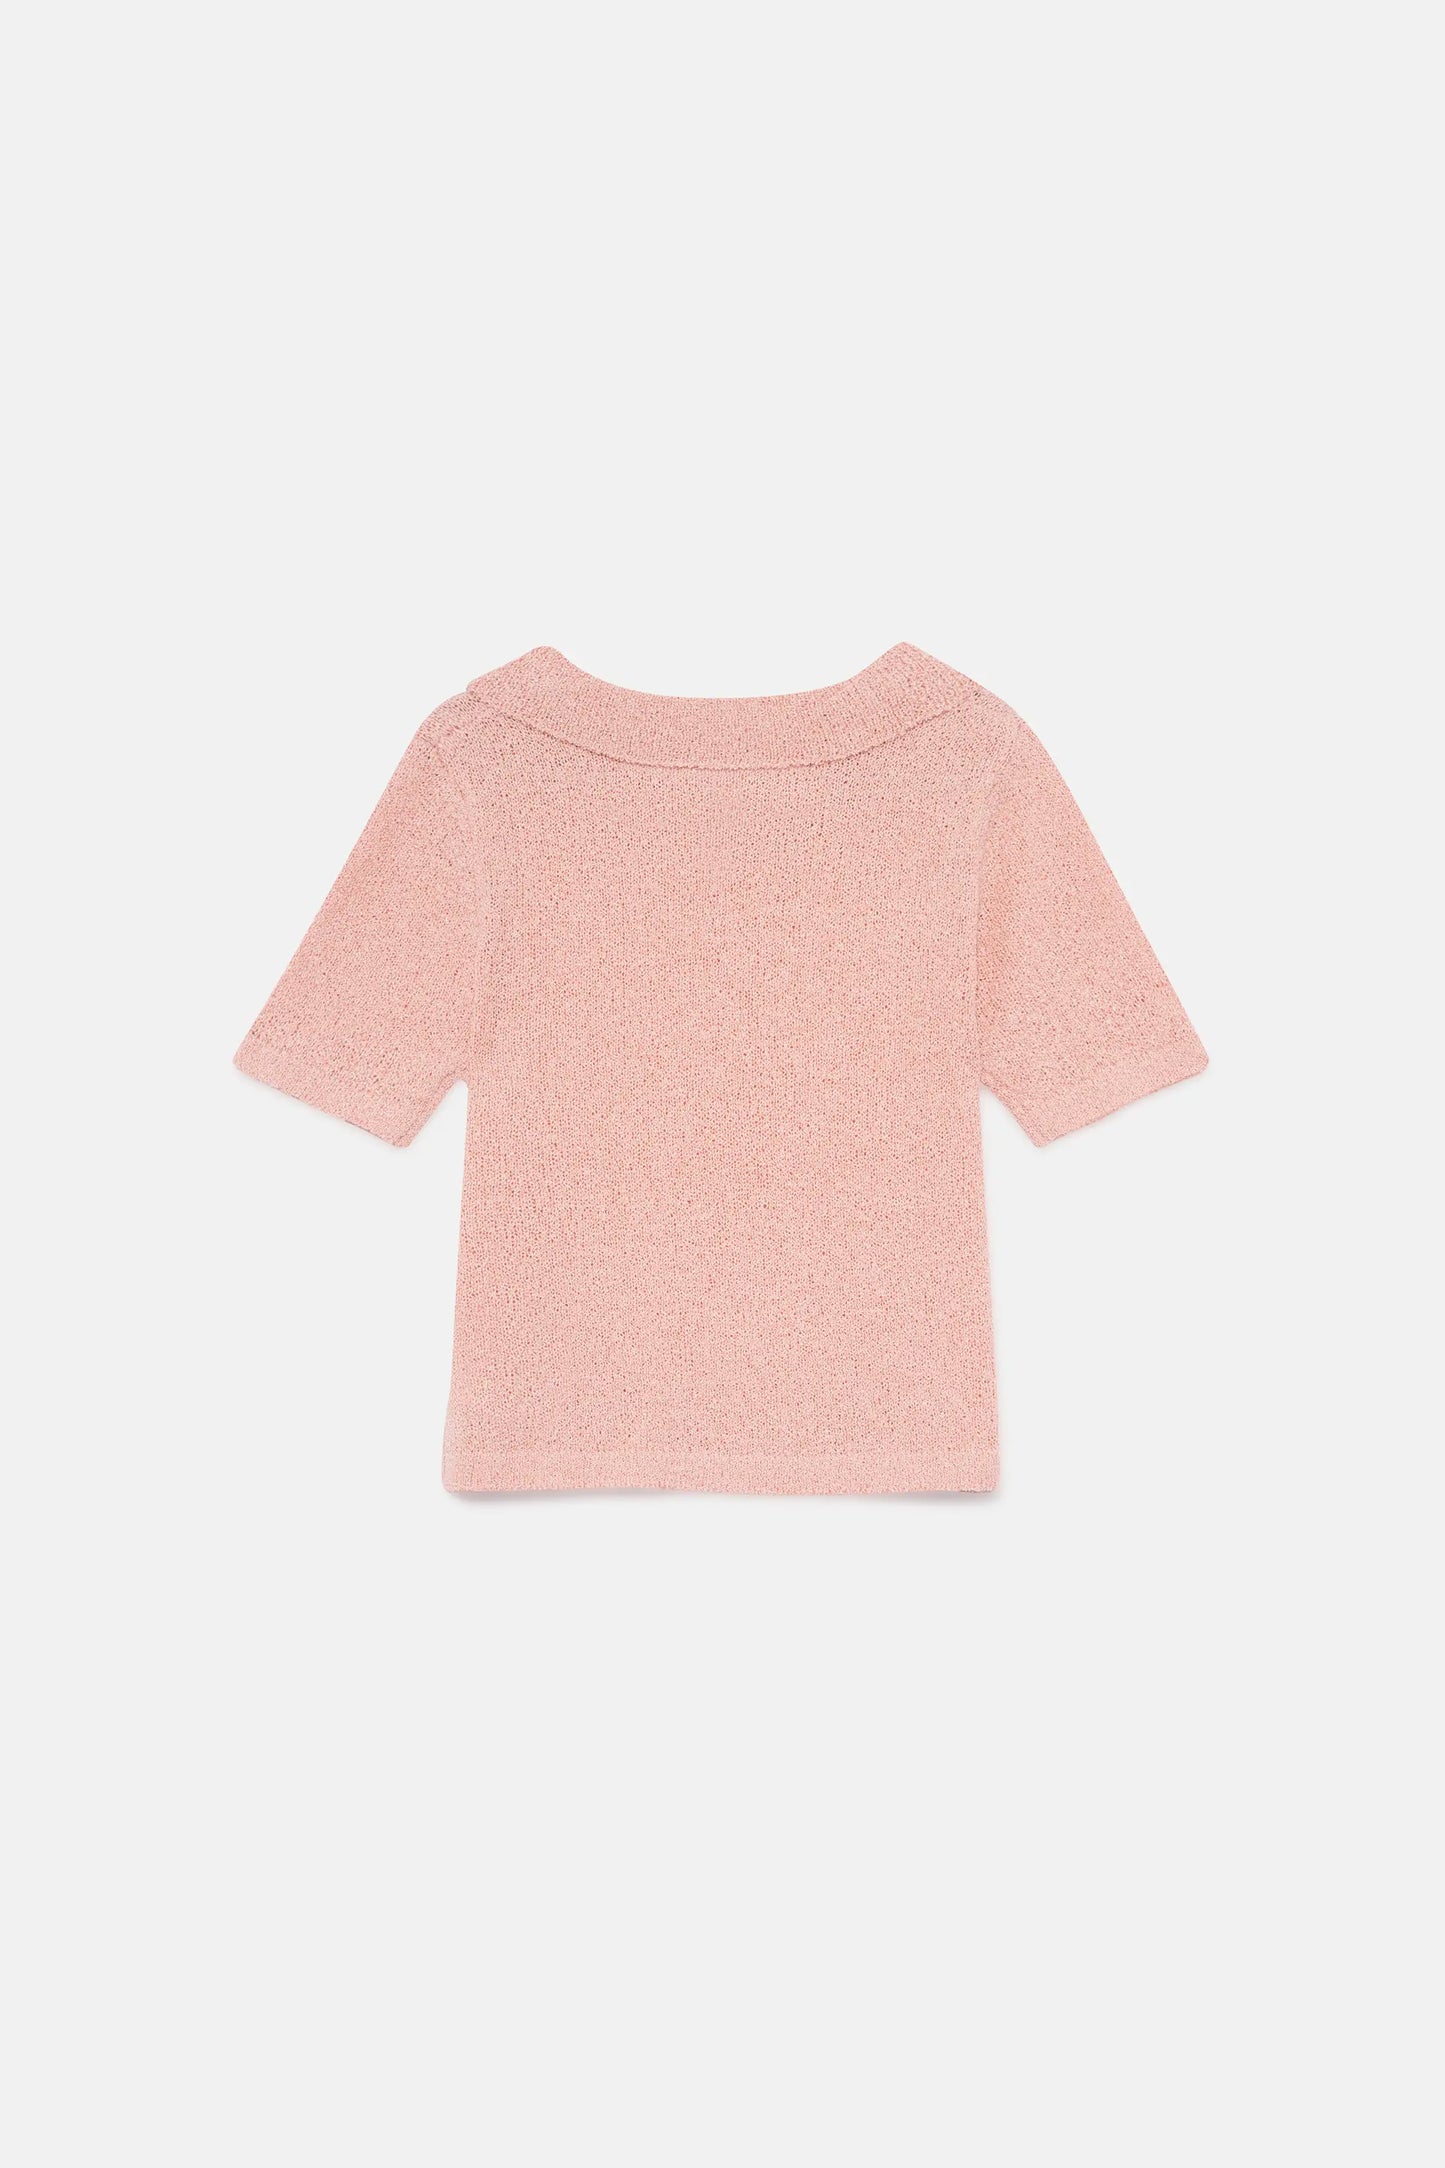 Jersey de niña cuello polo rosa